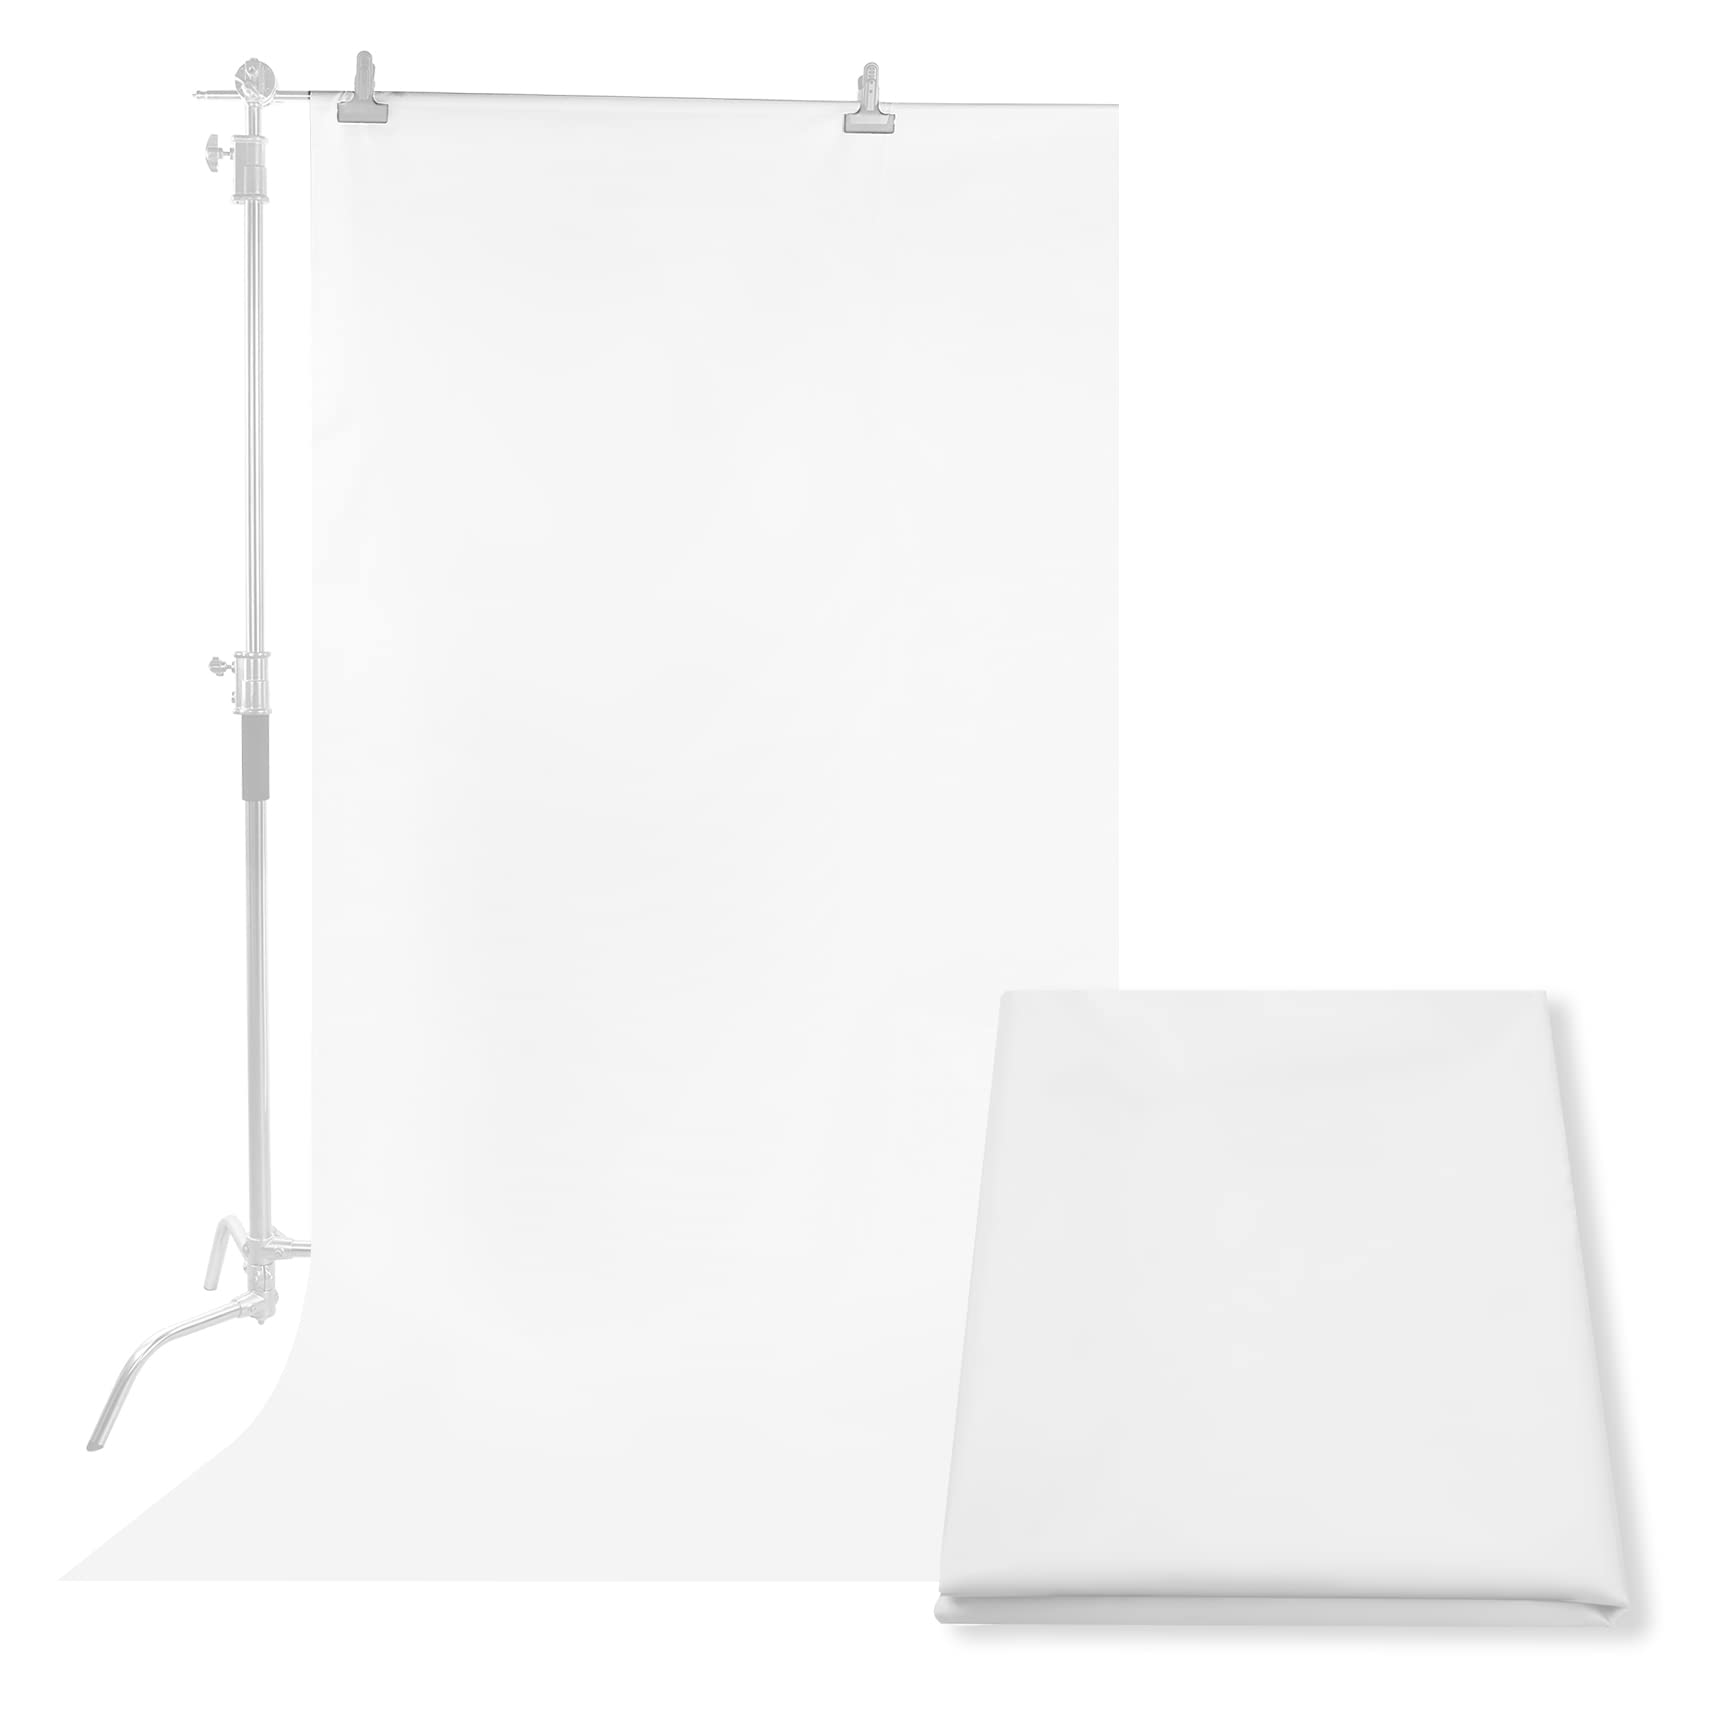 Selens 3x1,7M Diffusor Stoff Nylon Seide Weiß Diffusion Nahtloser Lichtmodifikator für Fotografie Beleuchtung, Softbox und Lichtzelte